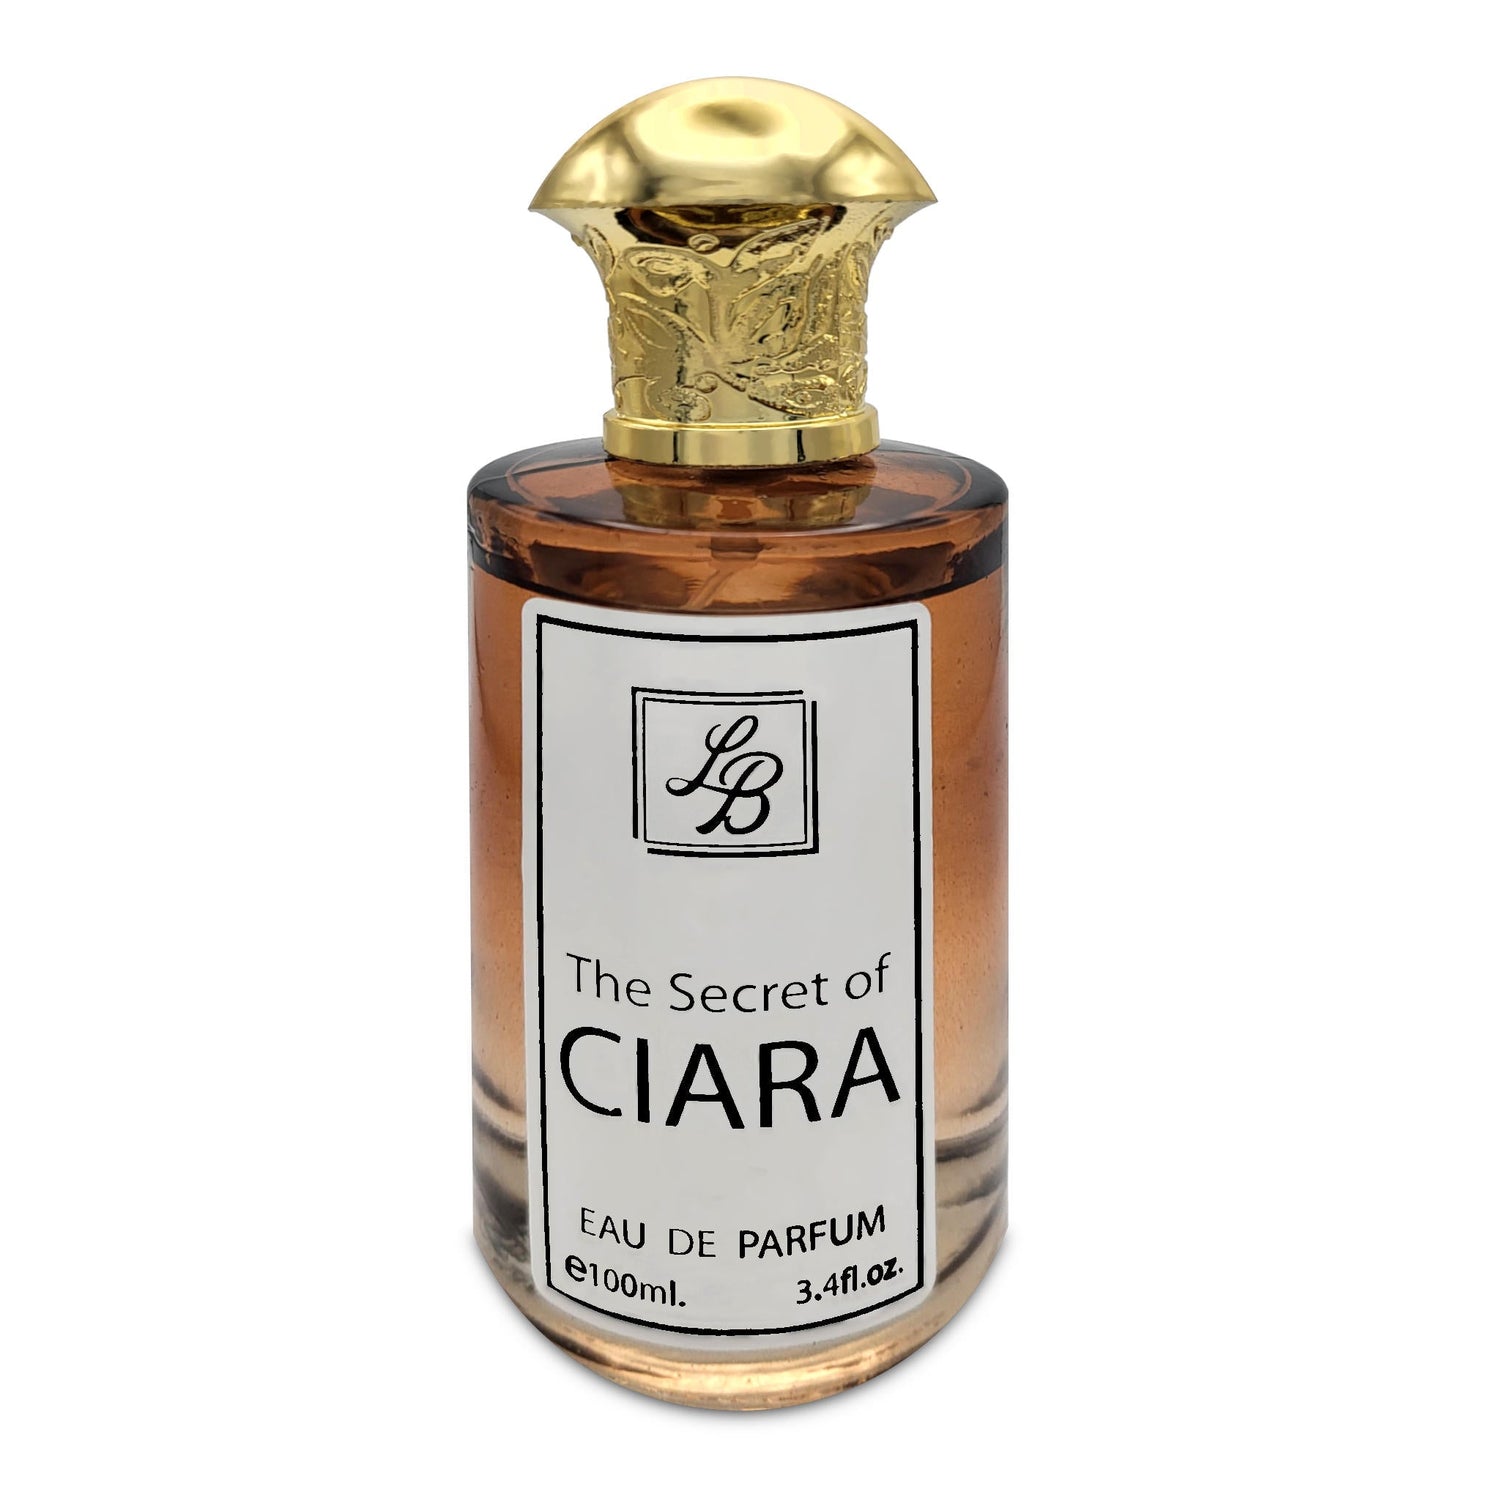 The Secret Of Ciara Eau De Parfum | 100ml